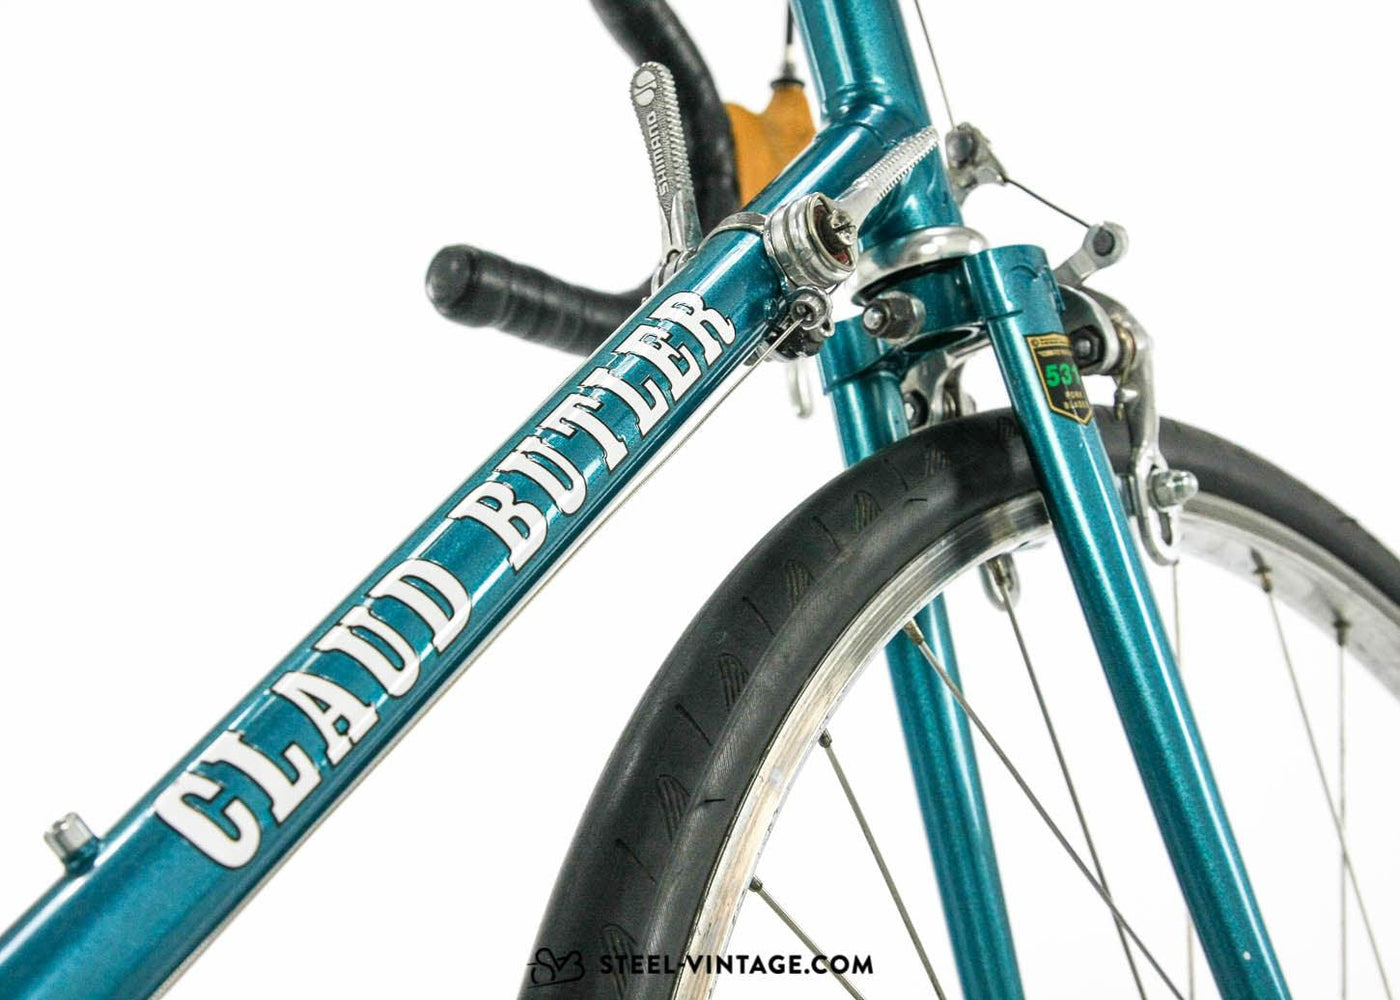 Claud Butler Bicycle 1980 - Steel Vintage Bikes